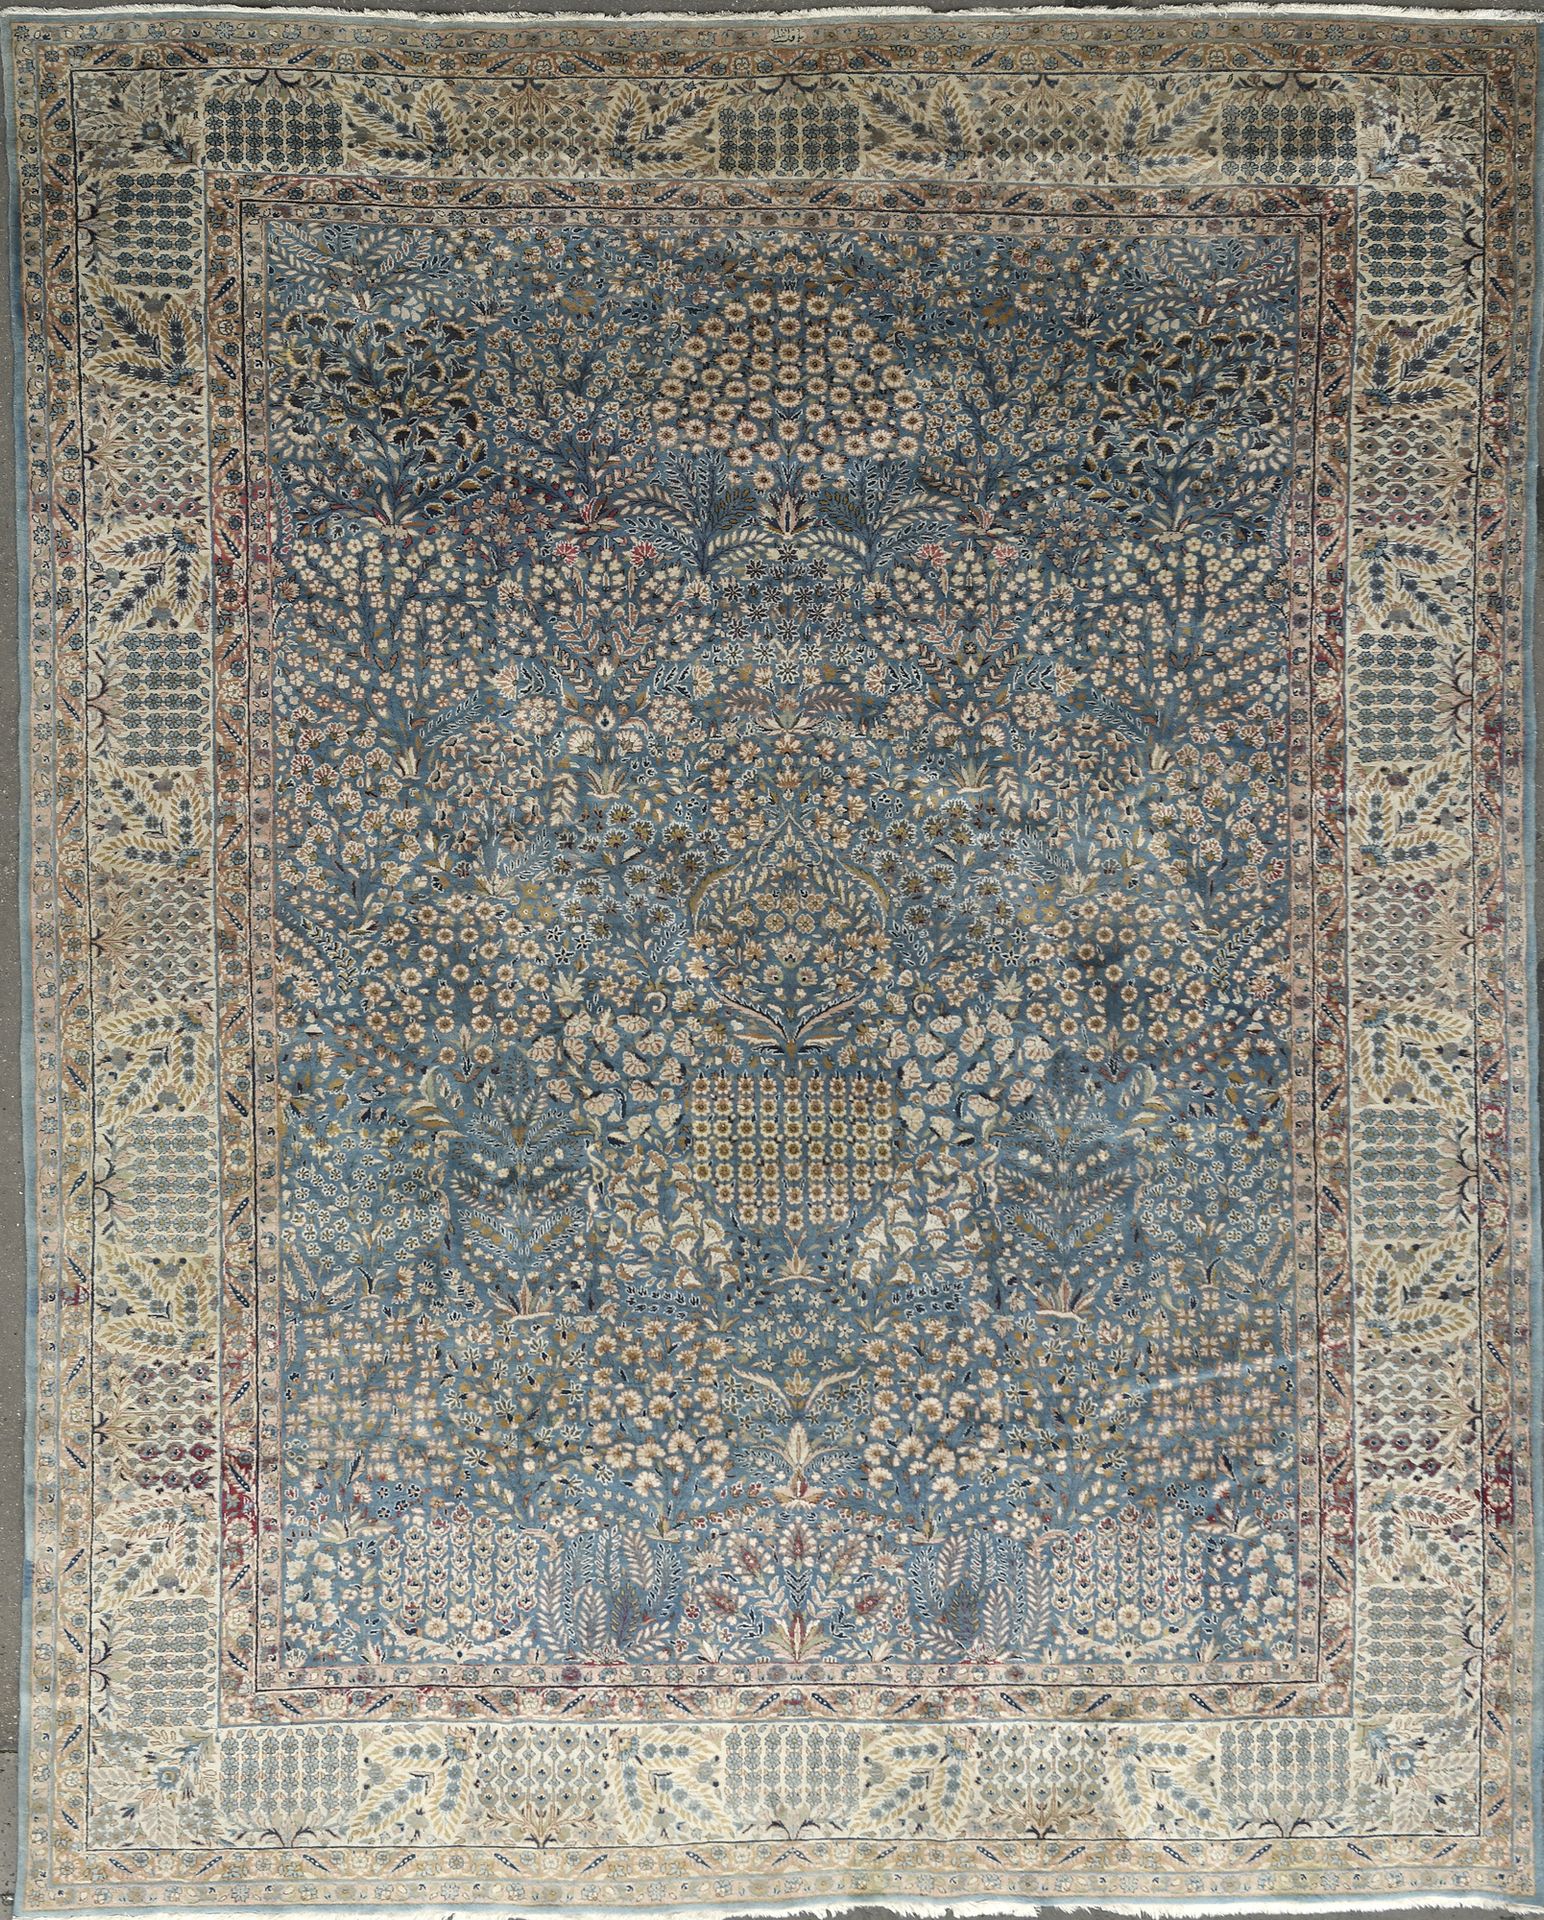 Null 伊朗，20 世纪中叶
重要、精美、原创的基尔曼作品，署名 Baft-e'-Aala。
天鹅绒由优质细丝羊毛制成，棉底上有丝花。密度约为每平方米 750&hellip;